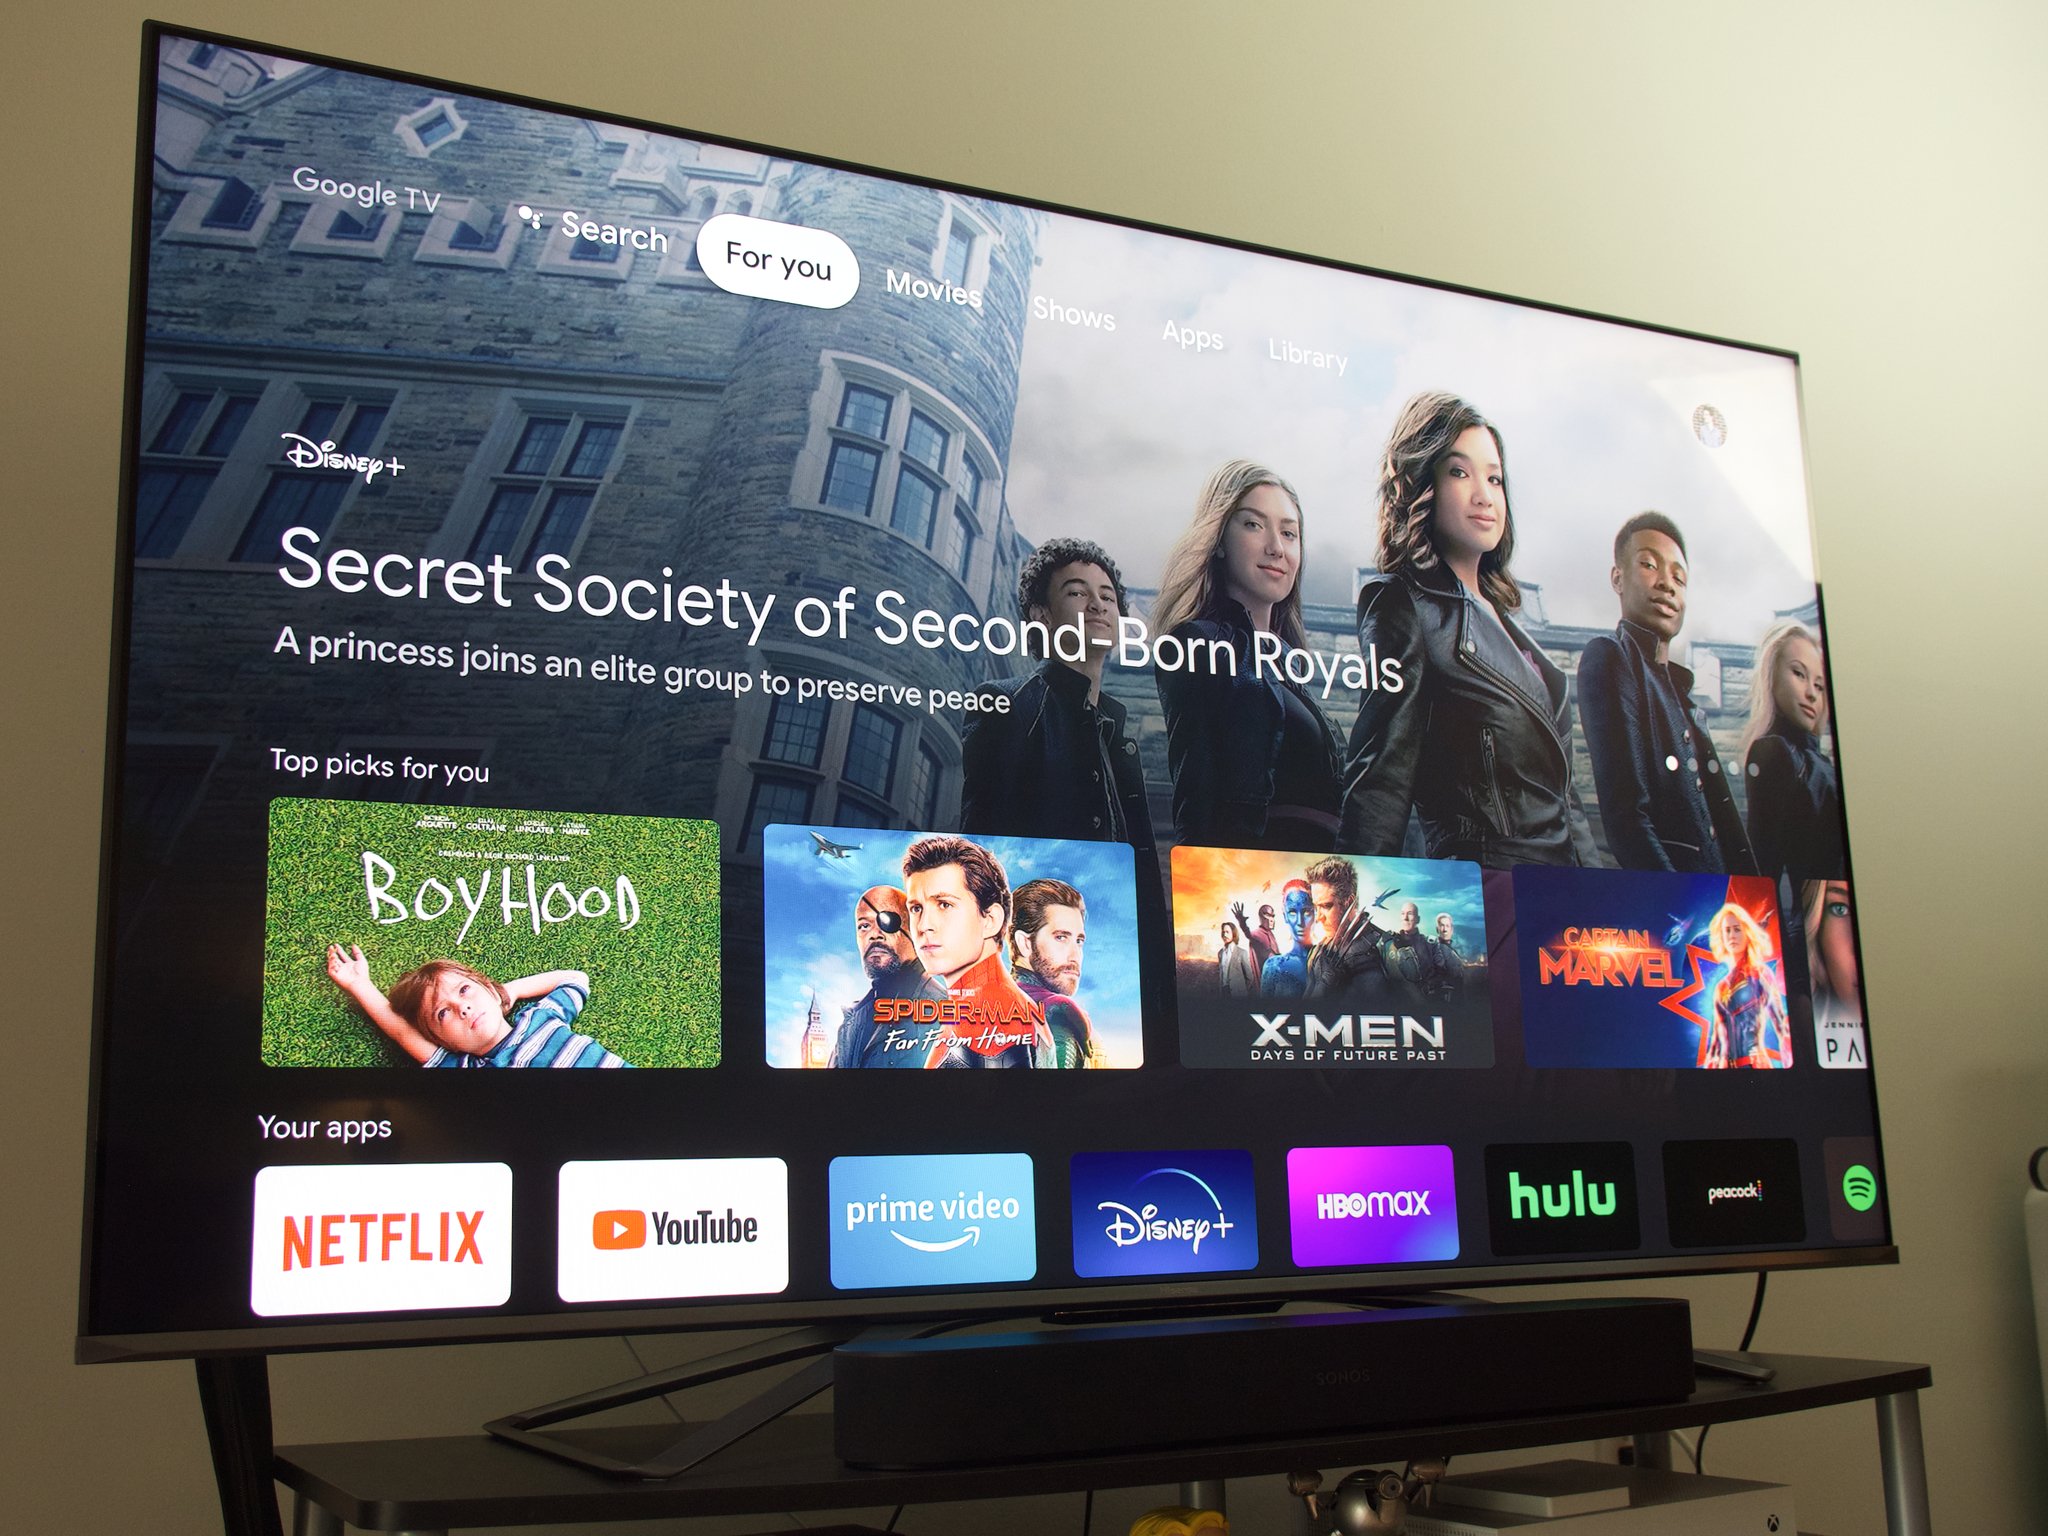 Best 4K TVs for Chromecast 2021